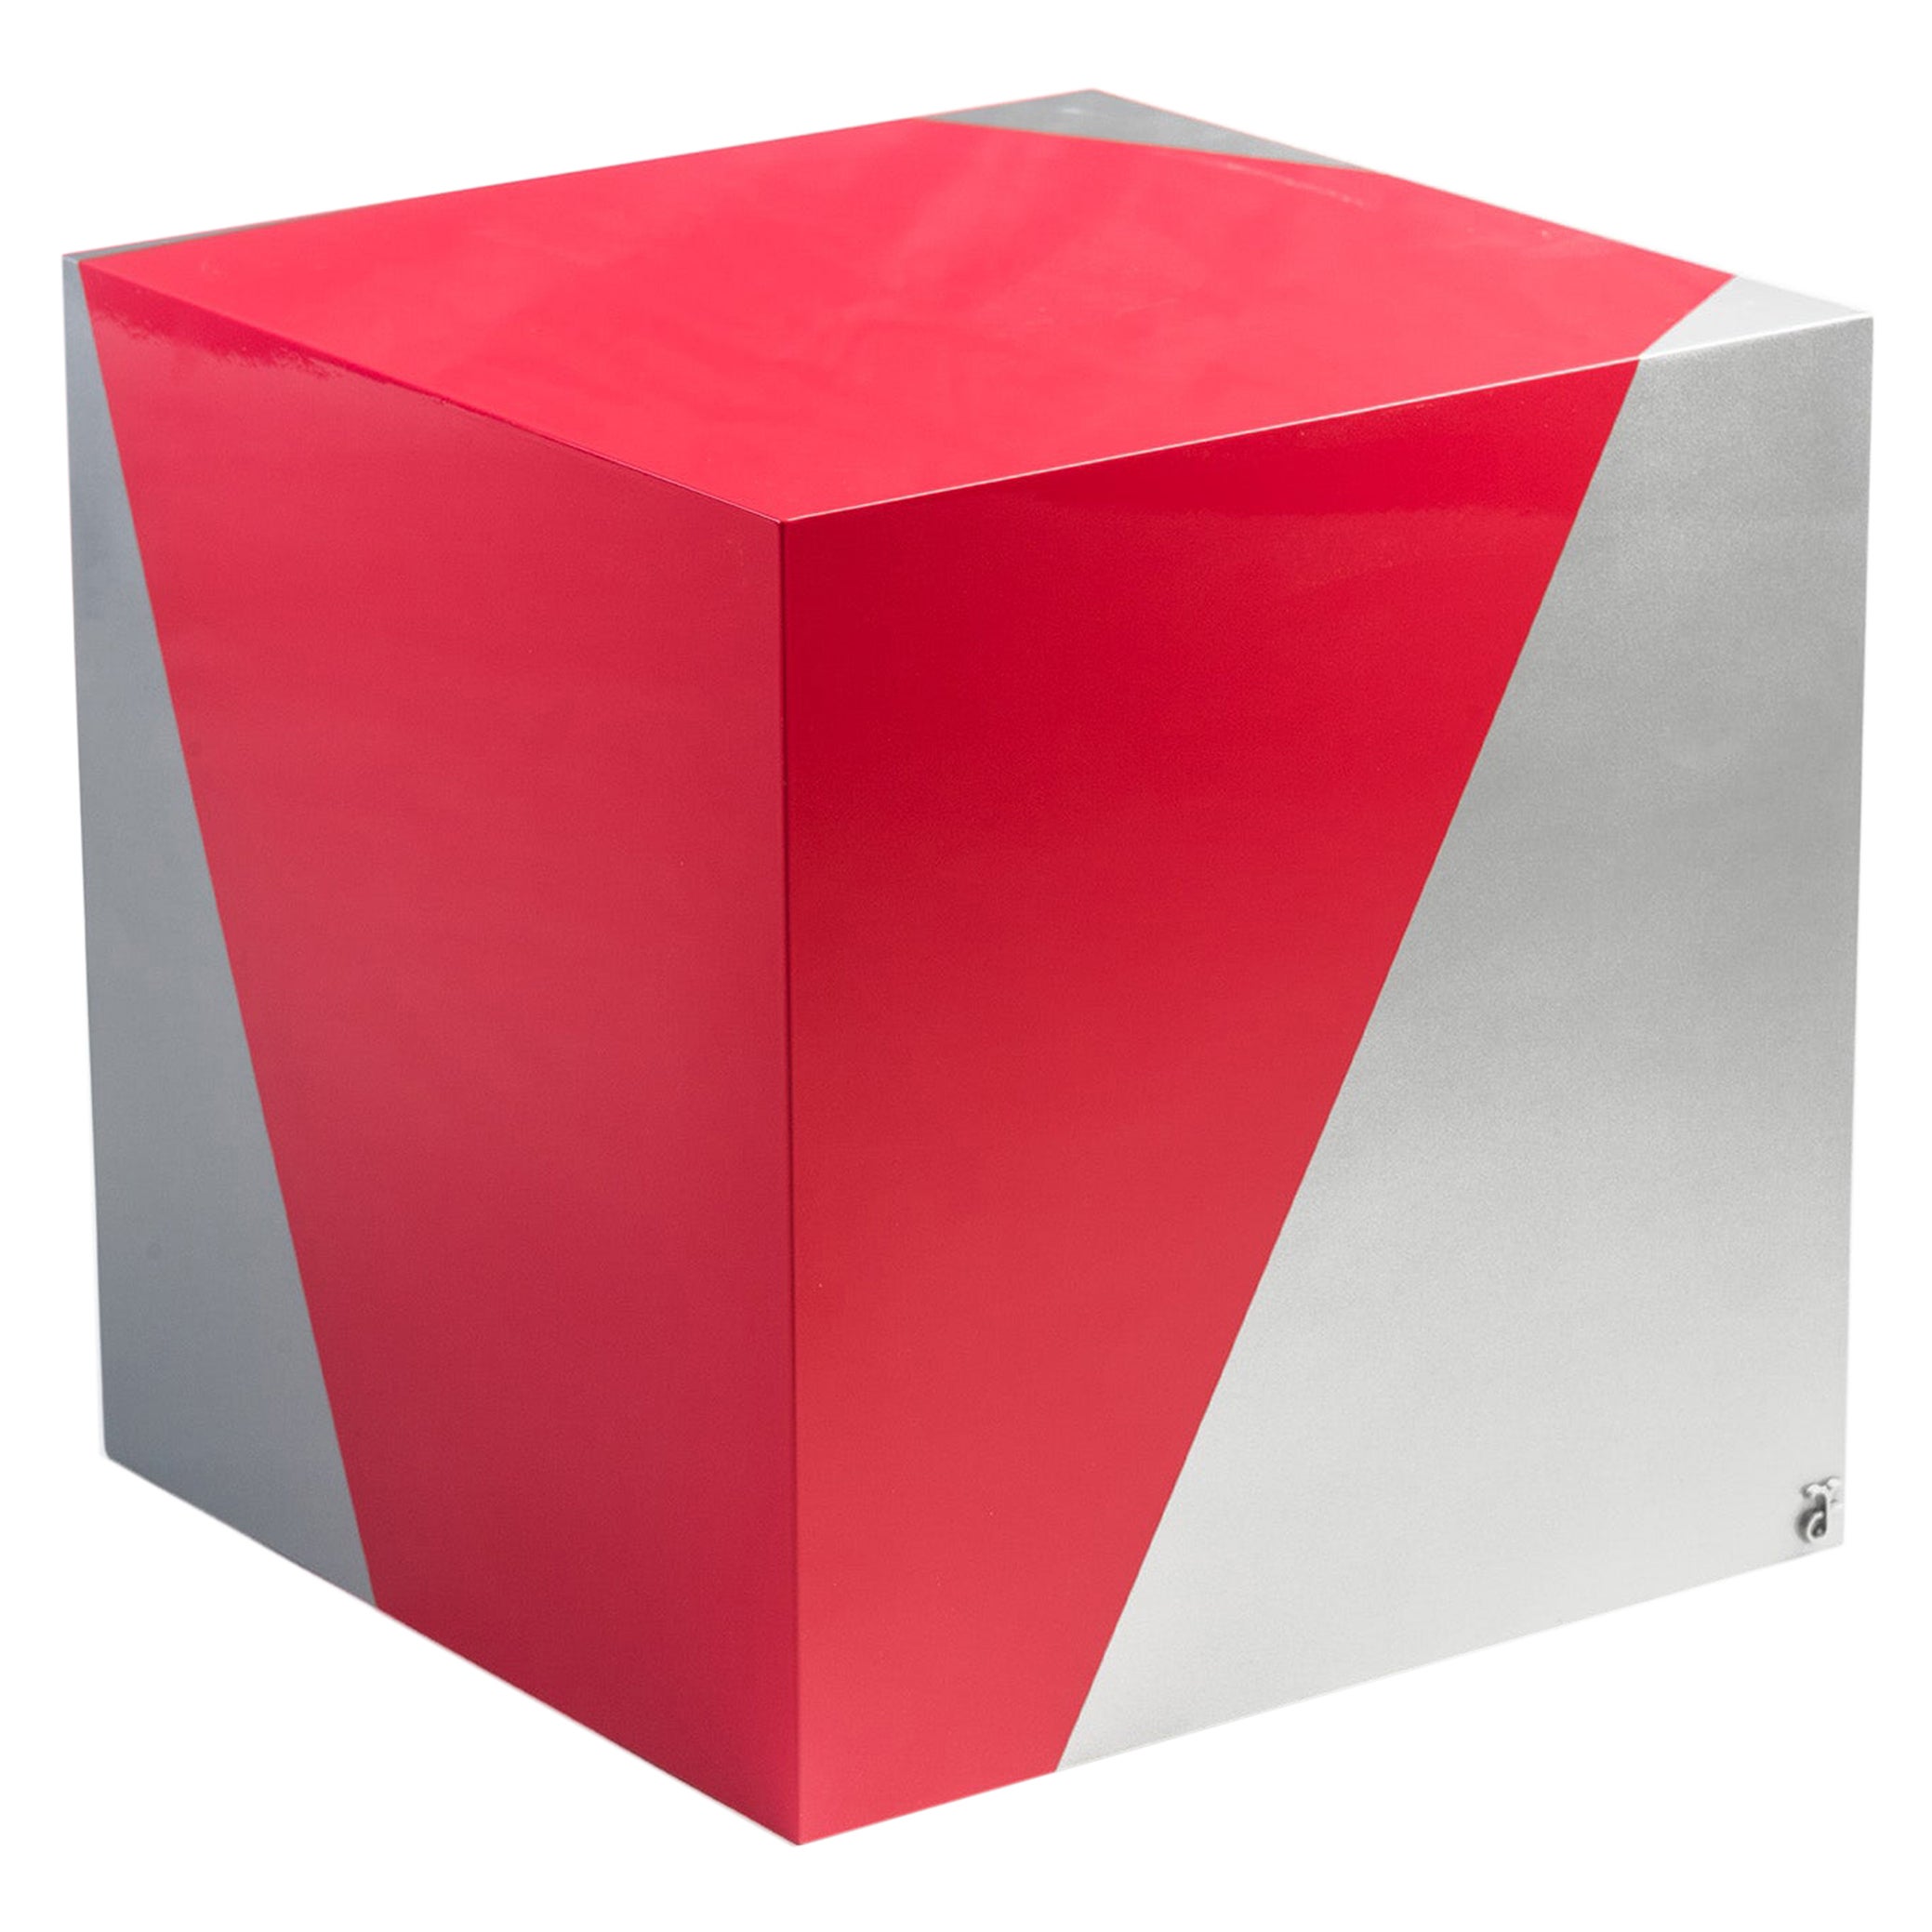 Sissi - Sissi - Siège empilable contemporain rouge en aluminium par Altreforme